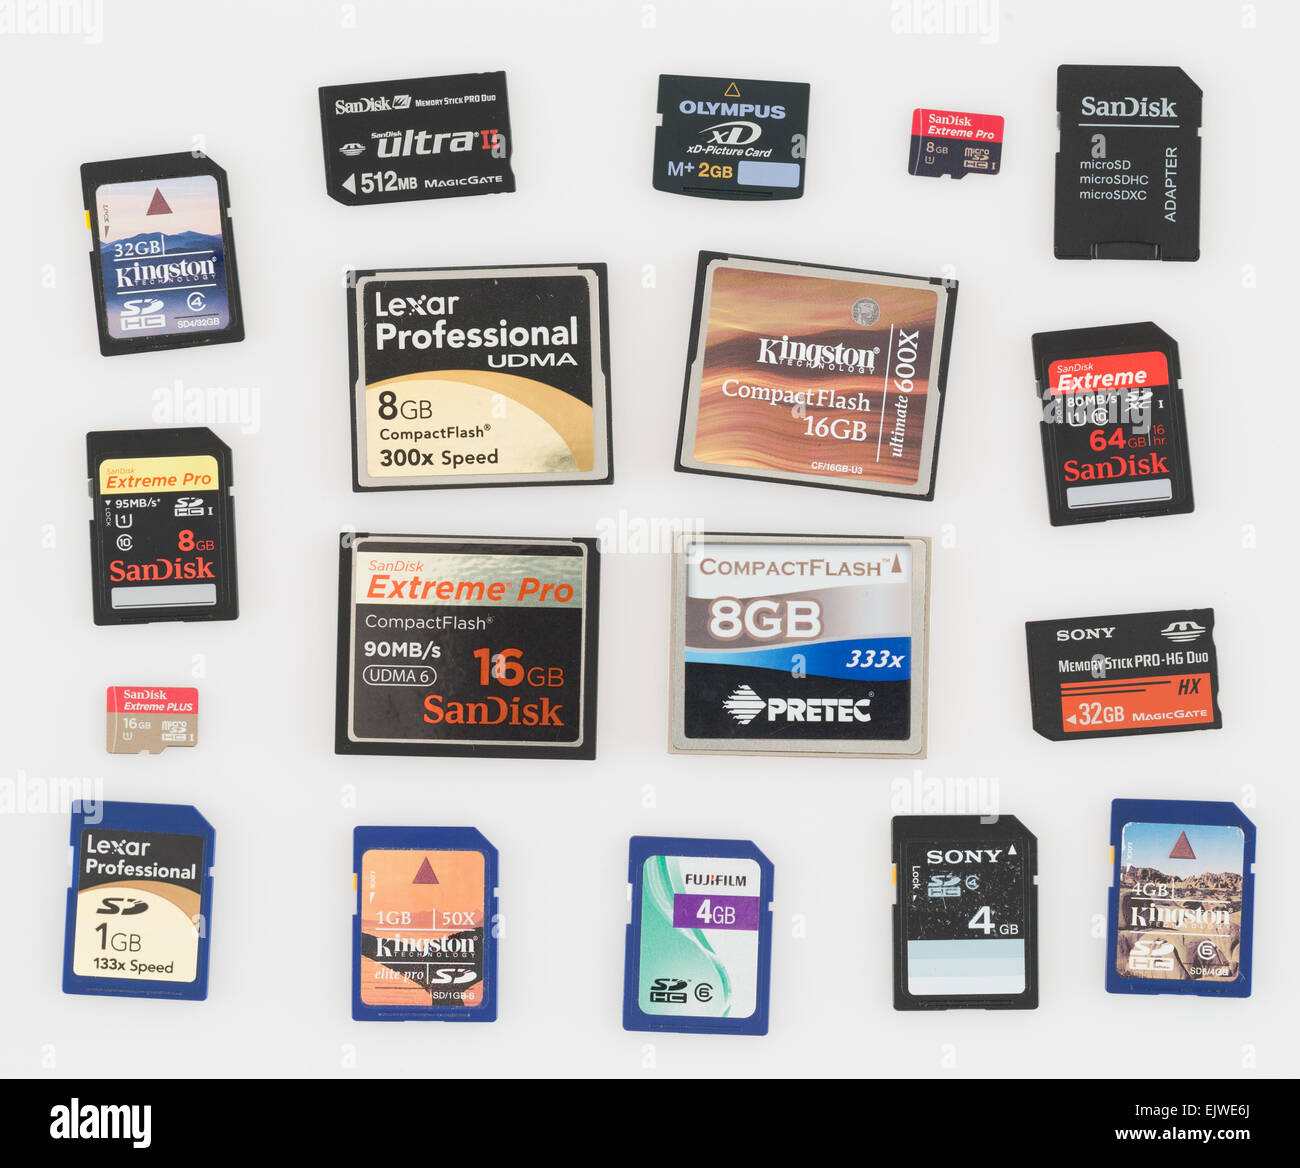 Sandisk compact flash card immagini e fotografie stock ad alta risoluzione  - Alamy